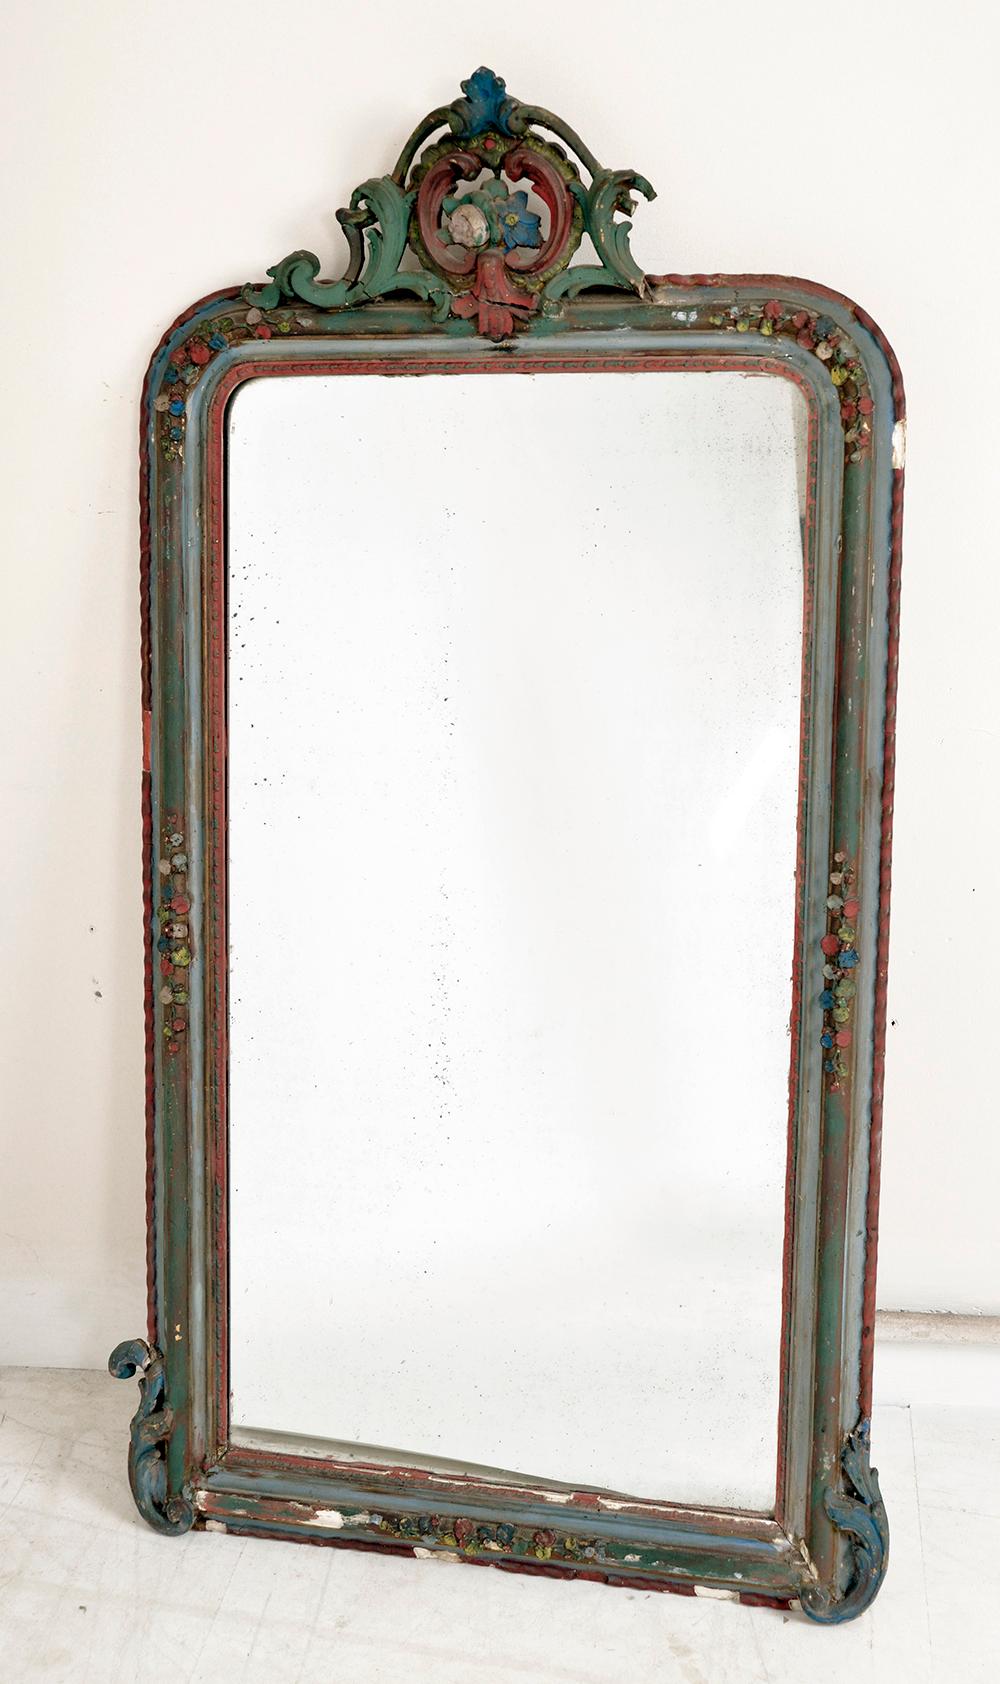 Un très élégant miroir de la fin du 19ème siècle acheté en Belgique, présentant un cadre élaboré en bois et plâtre avec une finition en bois peint, et un miroir en verre légèrement rouillé avec un reflet brillant. 
L'écusson floral est réalisé en